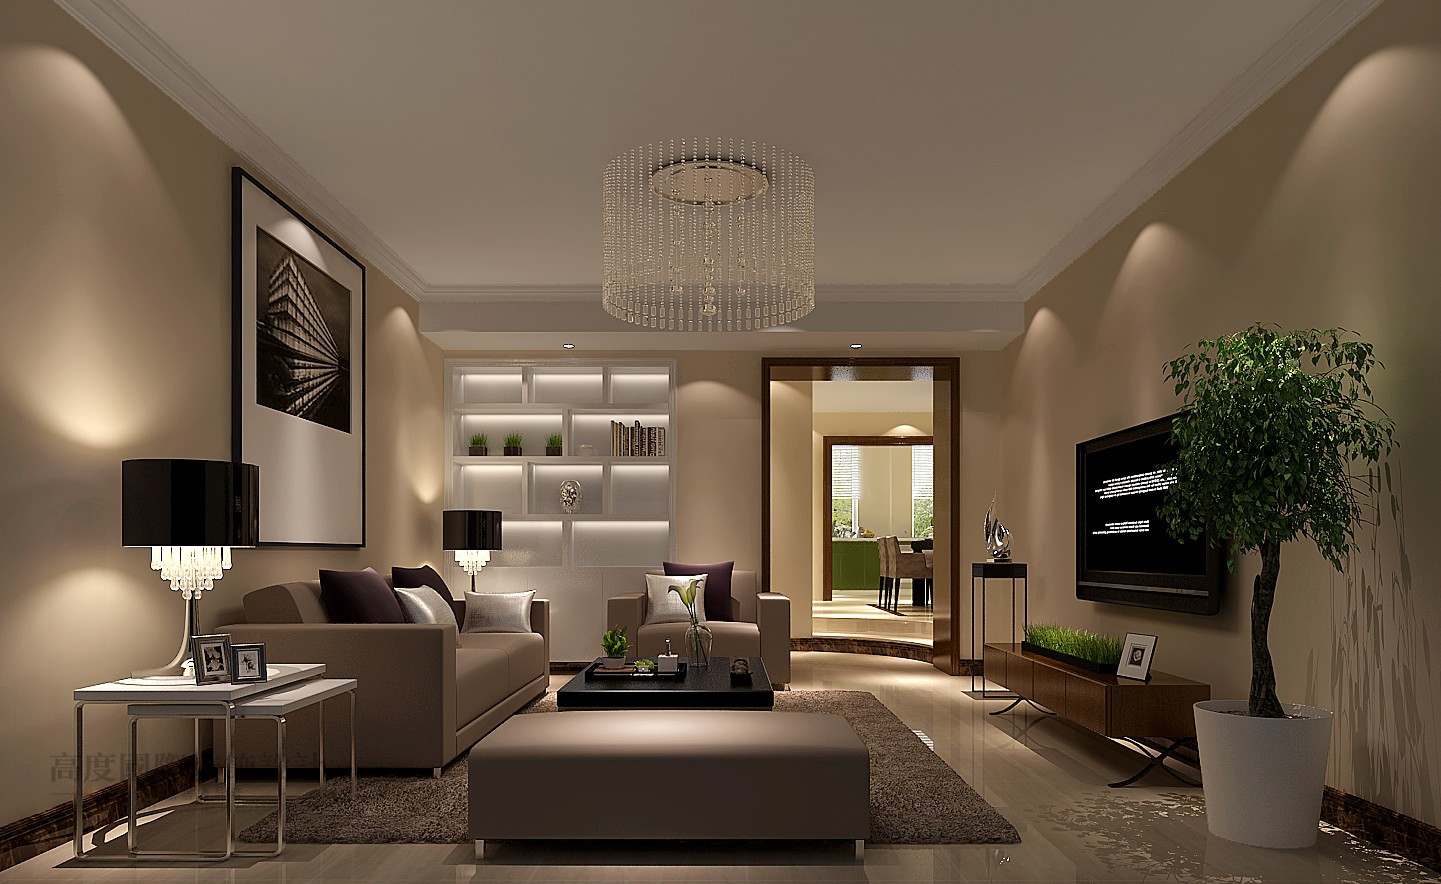 简约 公寓 效果图 设计案例 客厅图片来自高度国际设计装饰在大宁山庄简约风格设计案例的分享